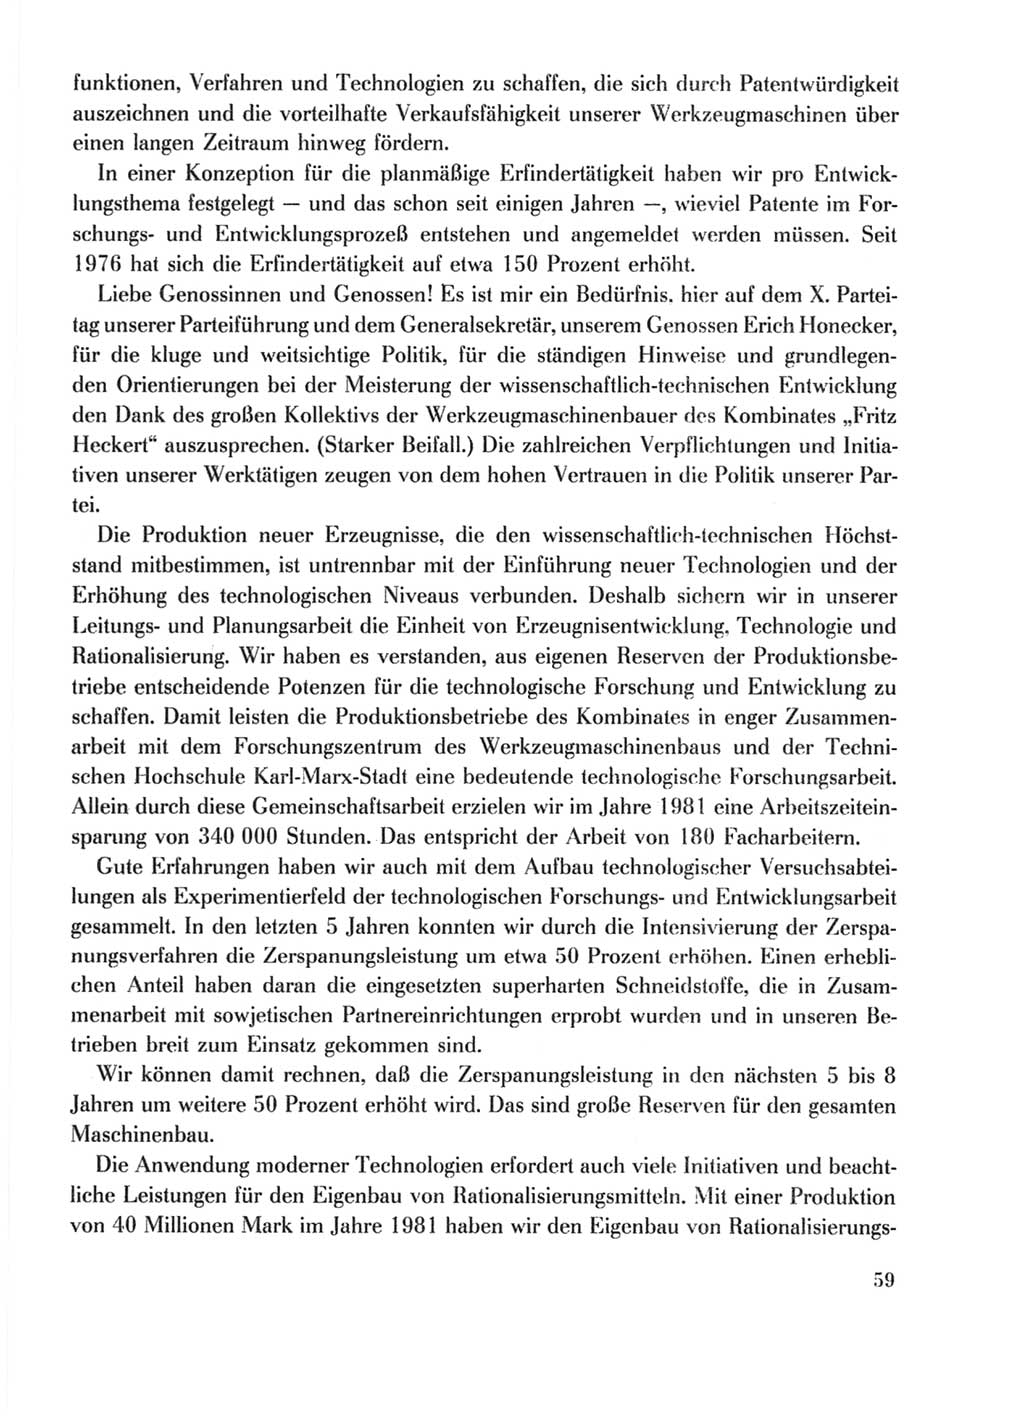 Protokoll der Verhandlungen des Ⅹ. Parteitages der Sozialistischen Einheitspartei Deutschlands (SED) [Deutsche Demokratische Republik (DDR)] 1981, Band 2, Seite 59 (Prot. Verh. Ⅹ. PT SED DDR 1981, Bd. 2, S. 59)